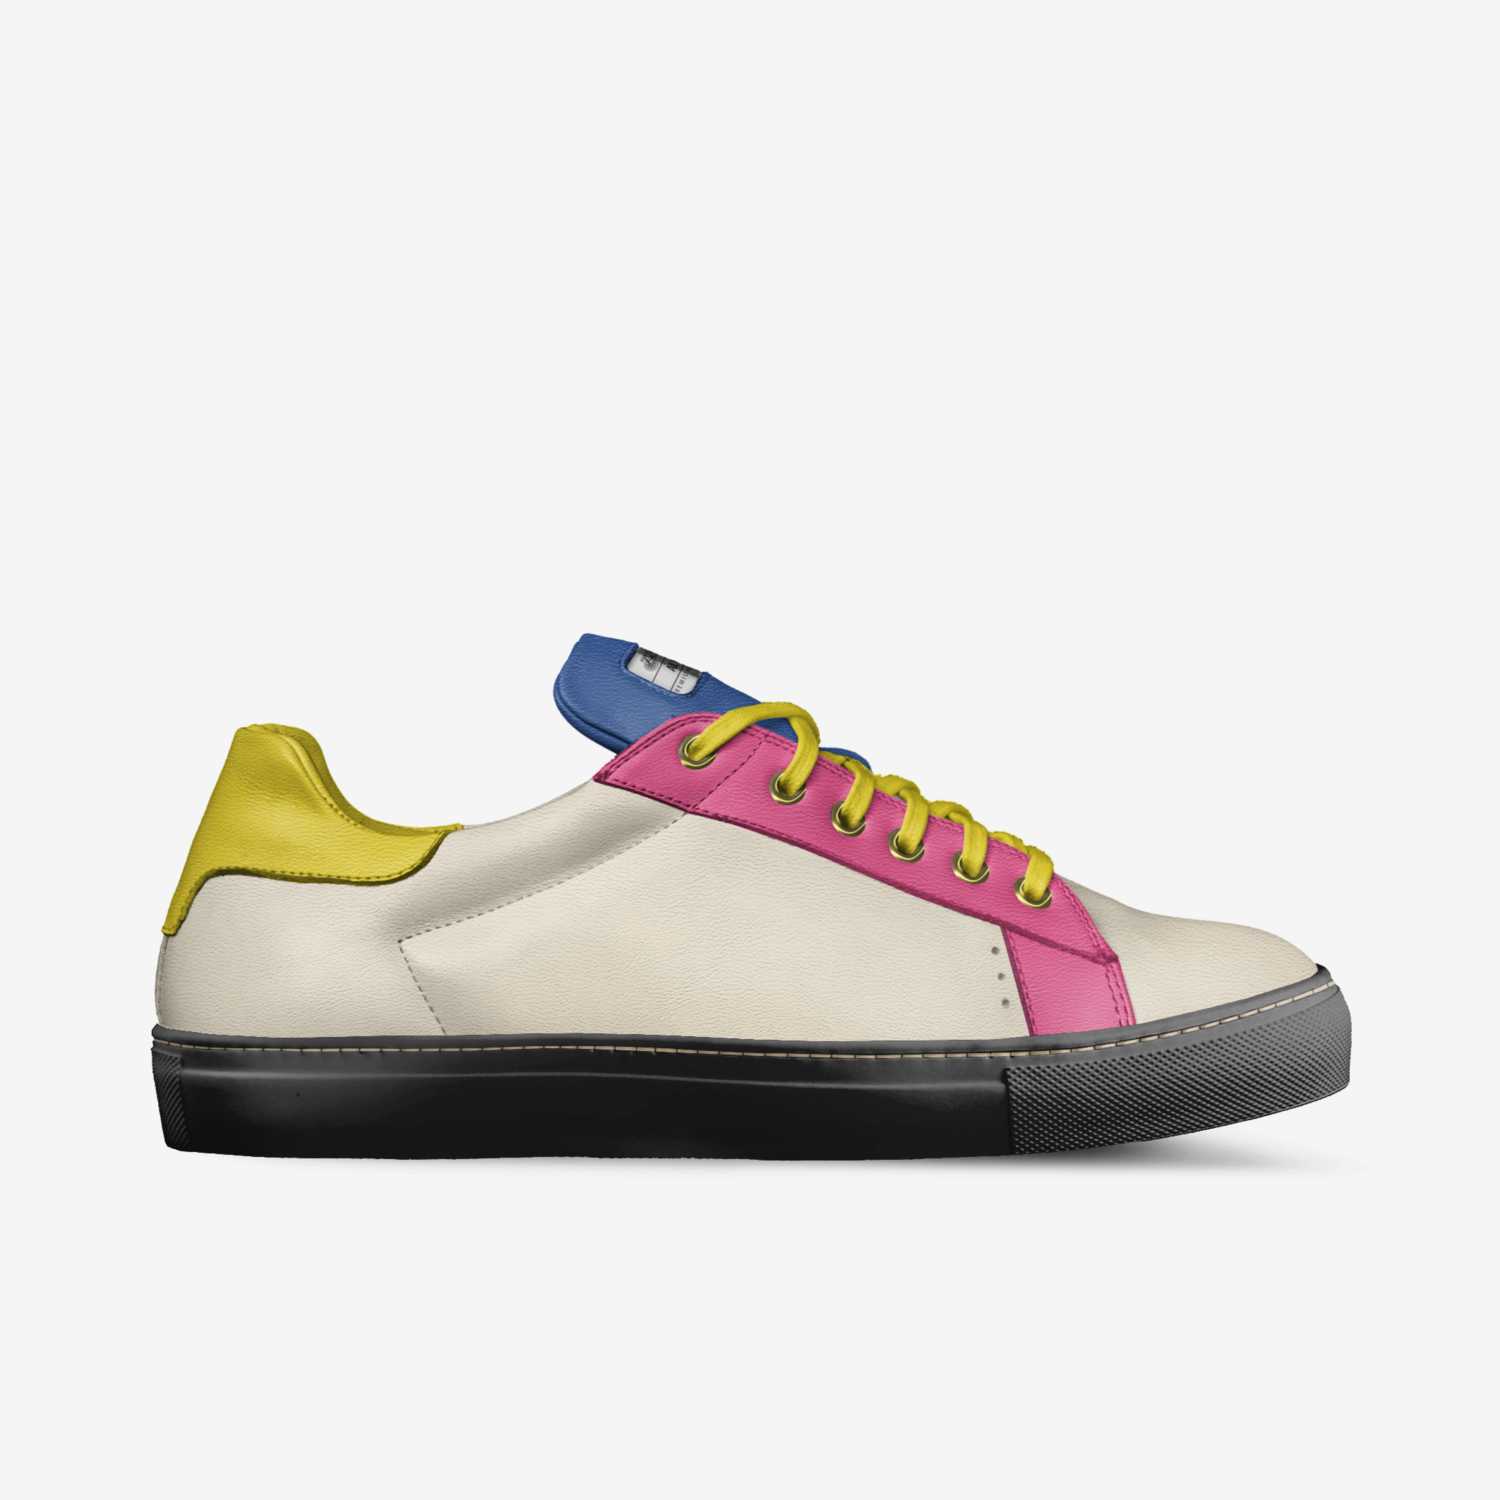 Alvin | A Custom Shoe concept by Alessio Ferraro